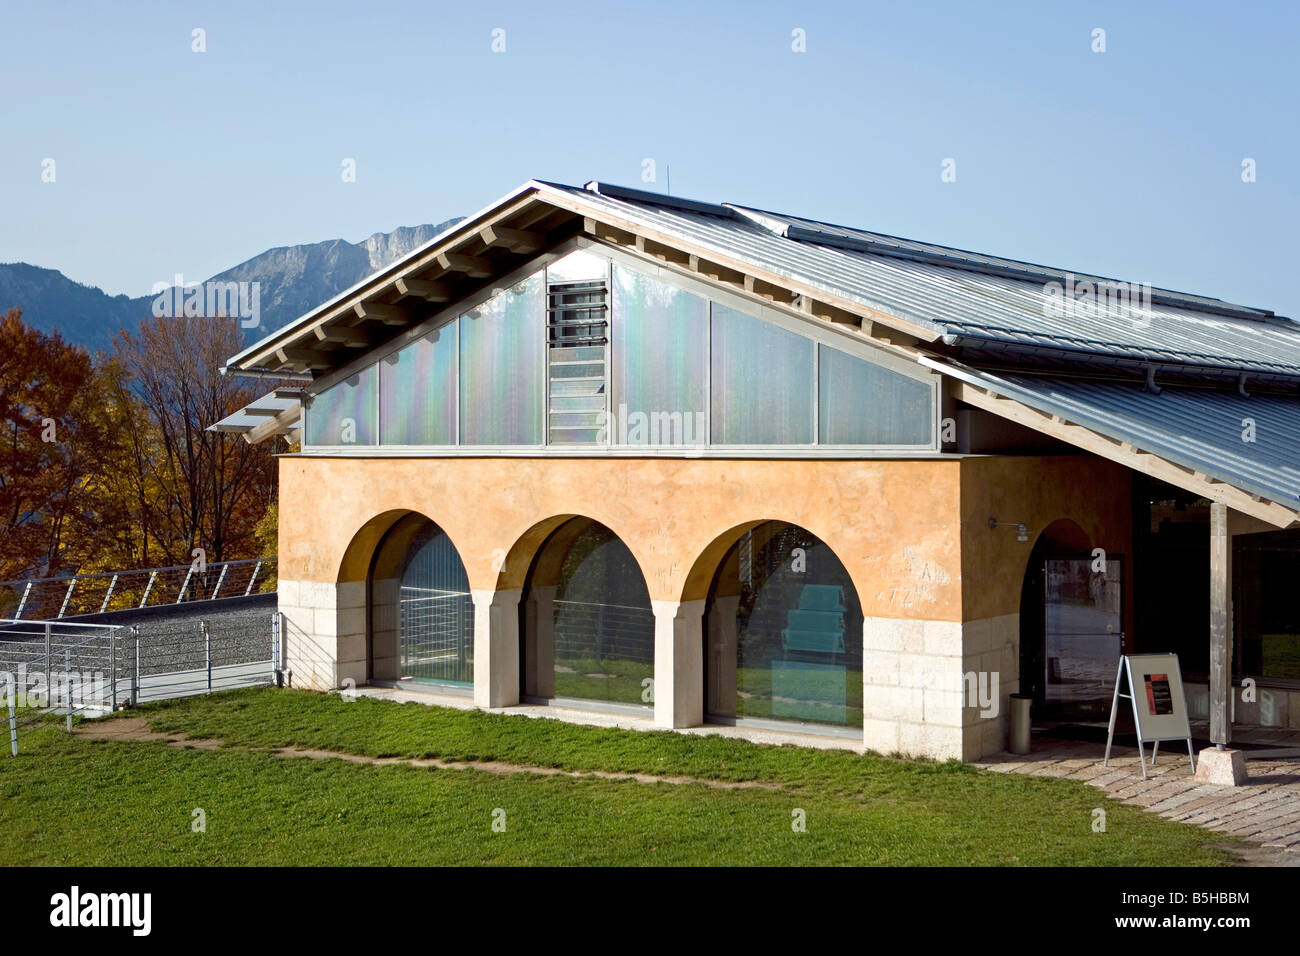 Ausstellung, Dokumentation Obersalzberg, Museum errichtet vor Ort von Hitlers Berghof Refugium in den Bergen, Obersalzberg, Bayern, G Stockfoto